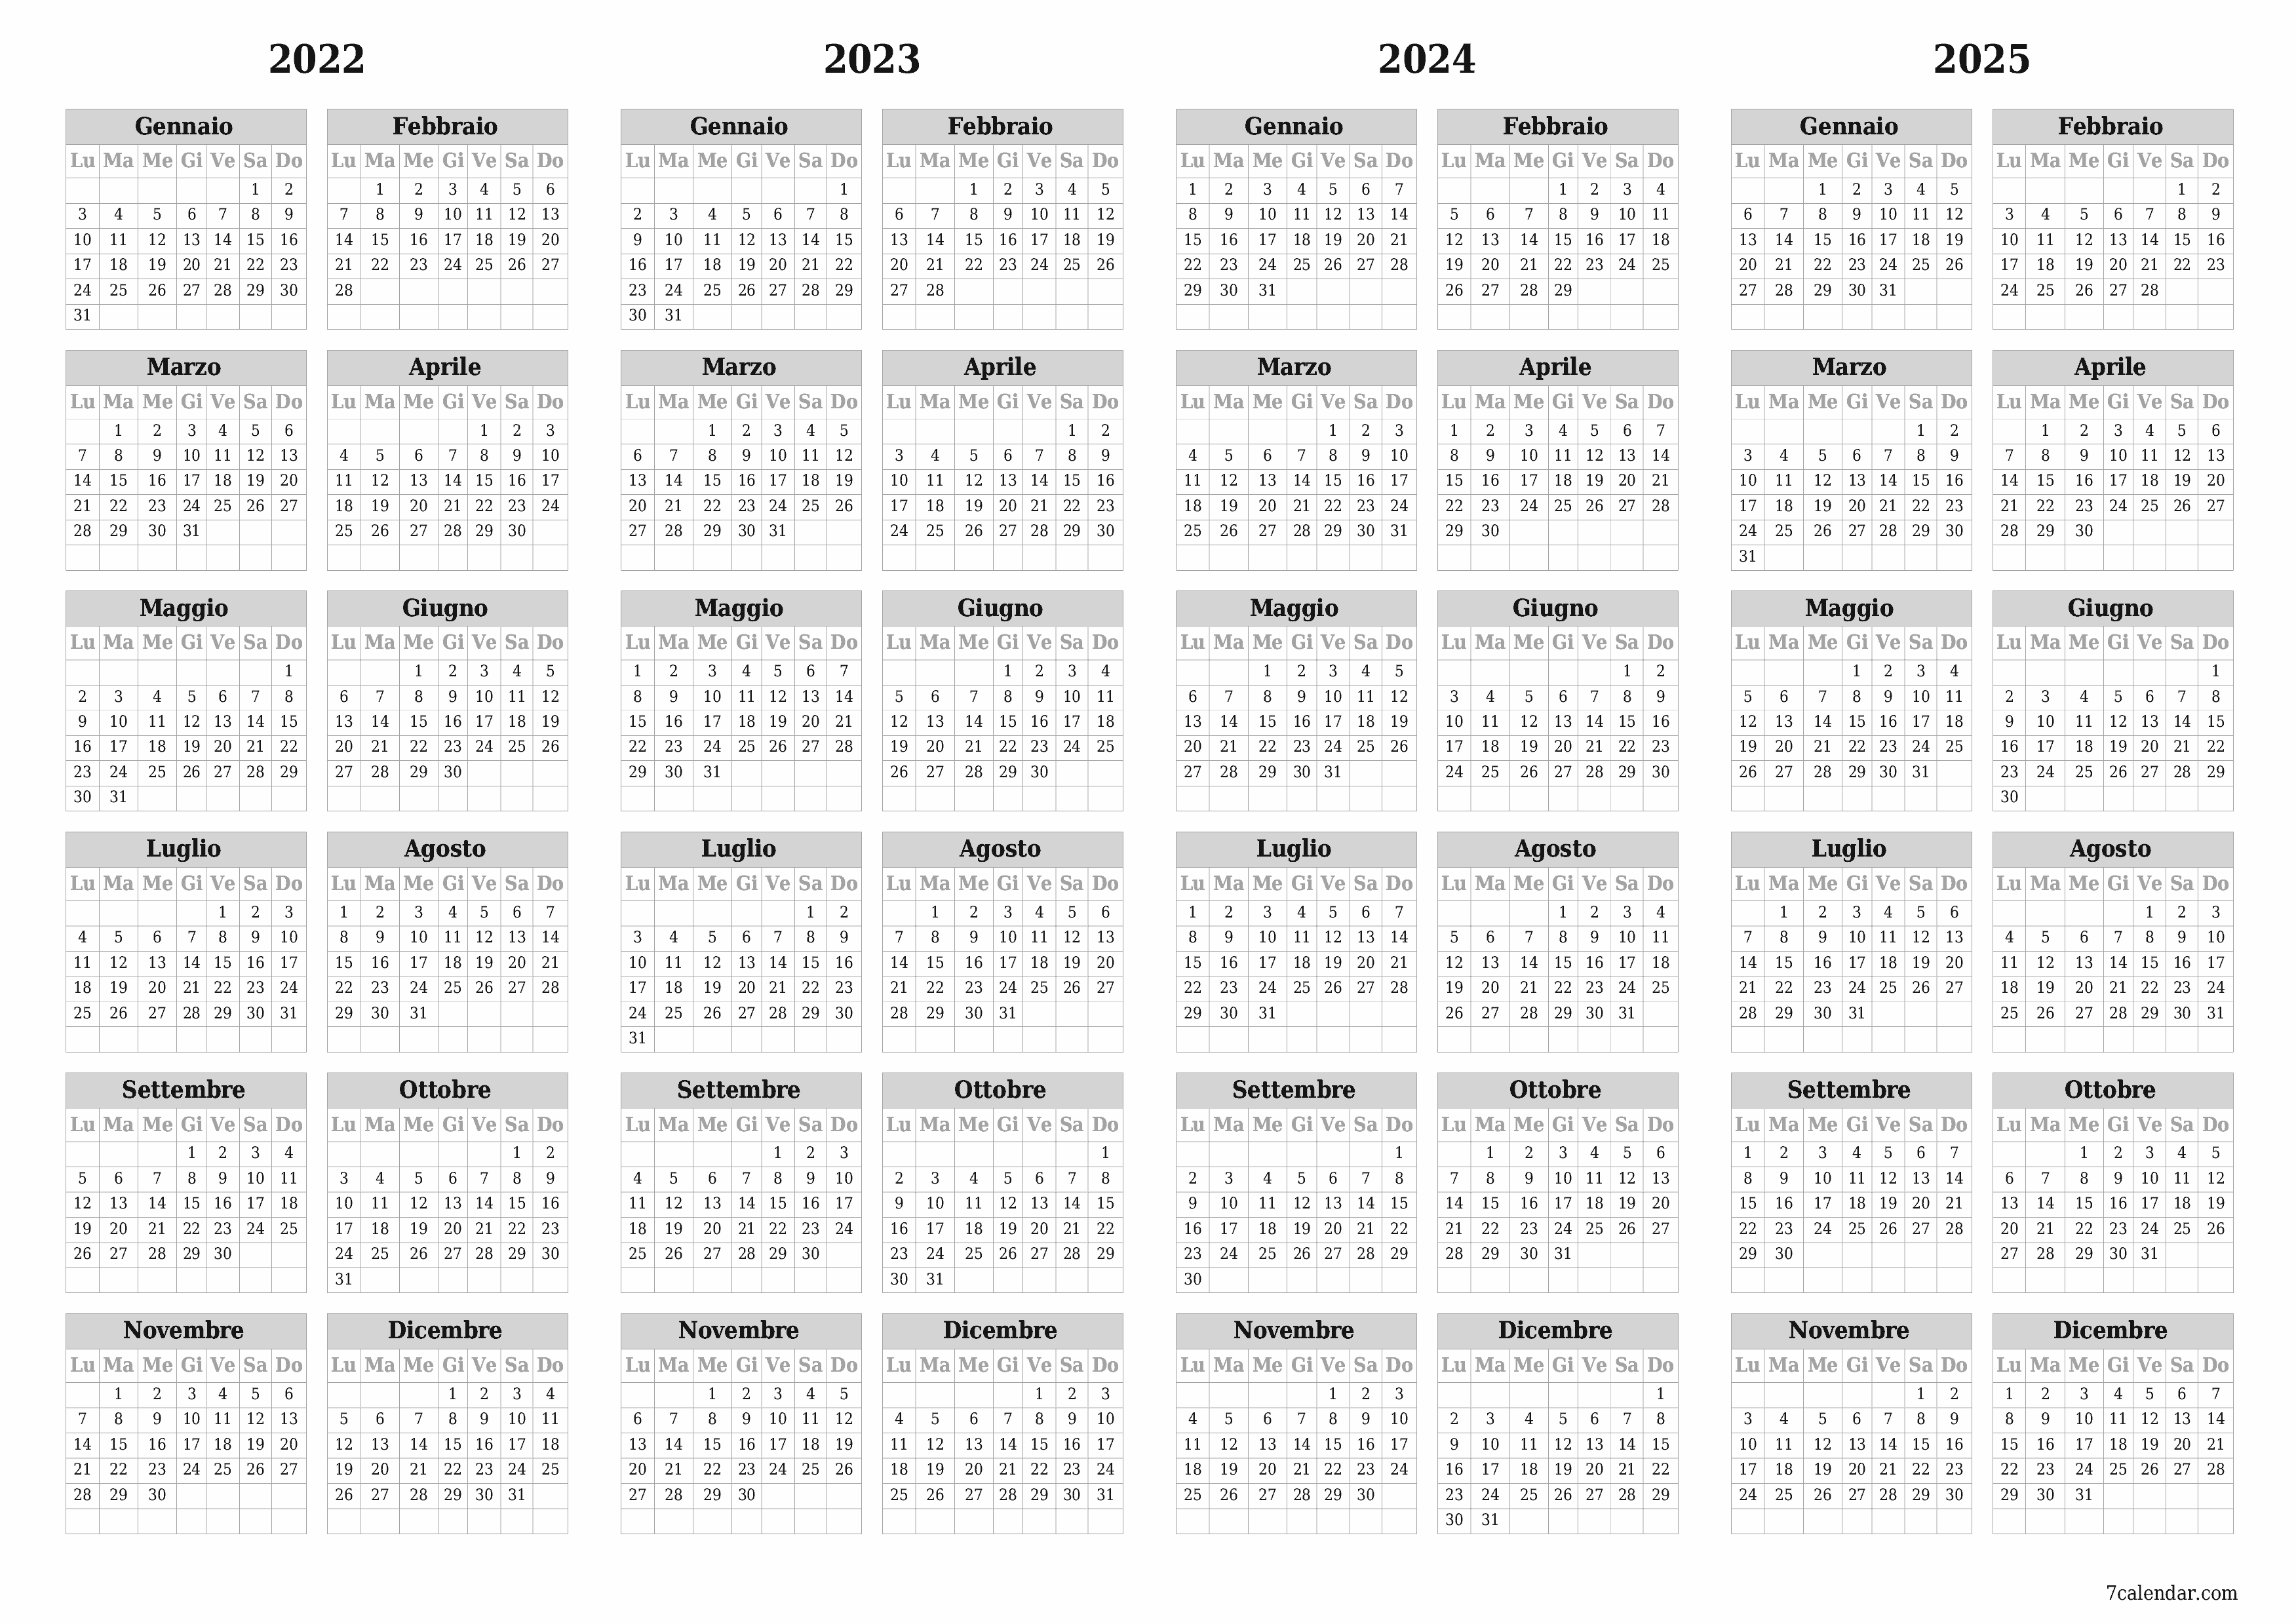  stampabile da parete modello di gratuitoorizzontale Annuale calendario Dicembre (Dic) 2022